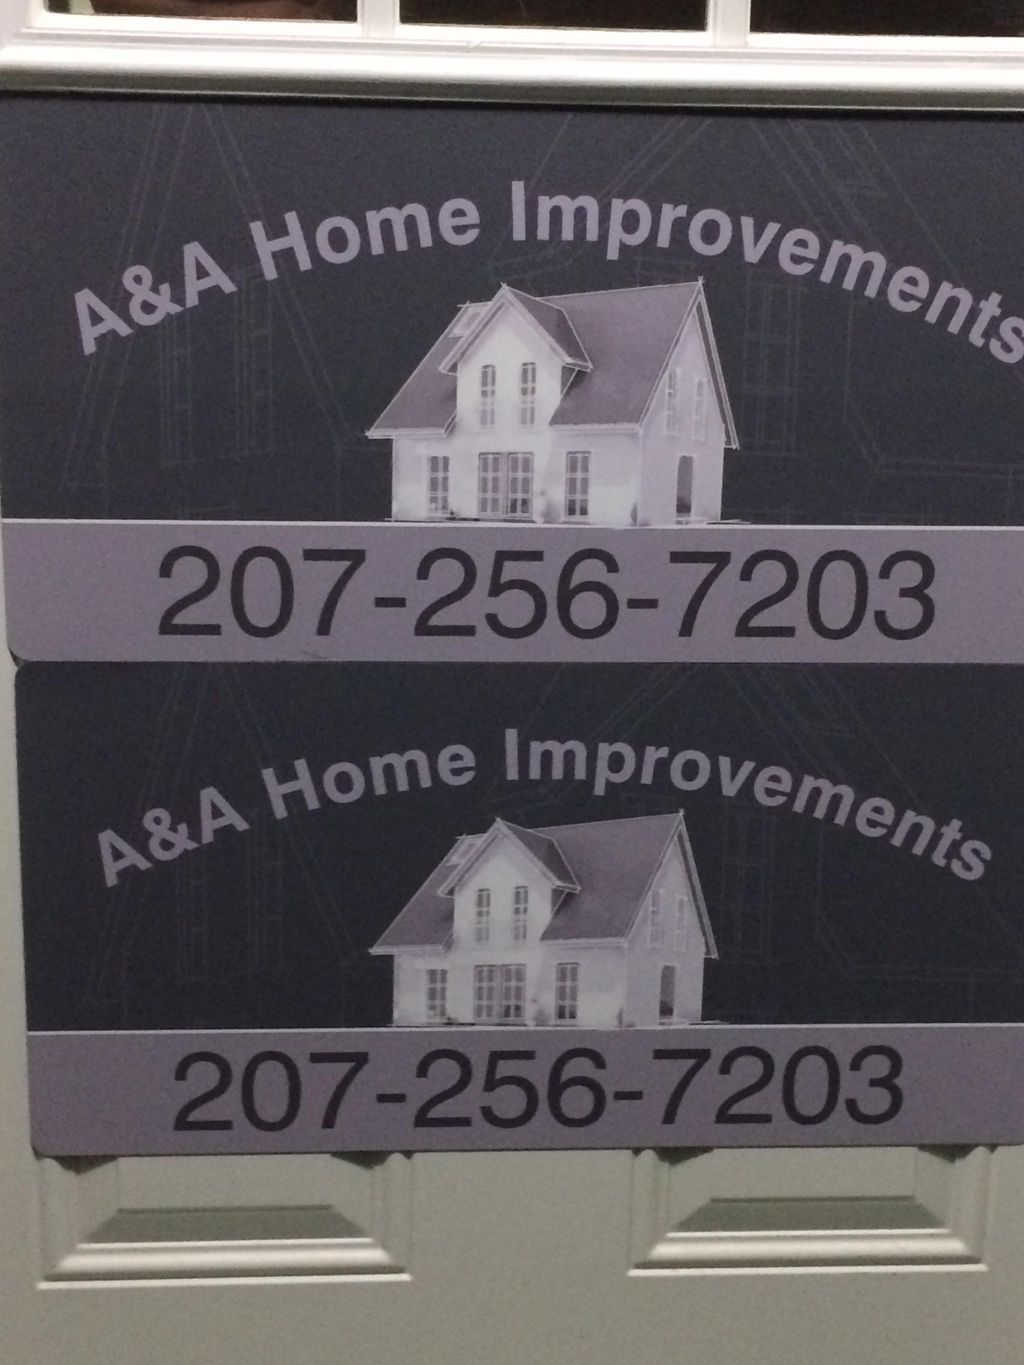 A&A Home Improvments